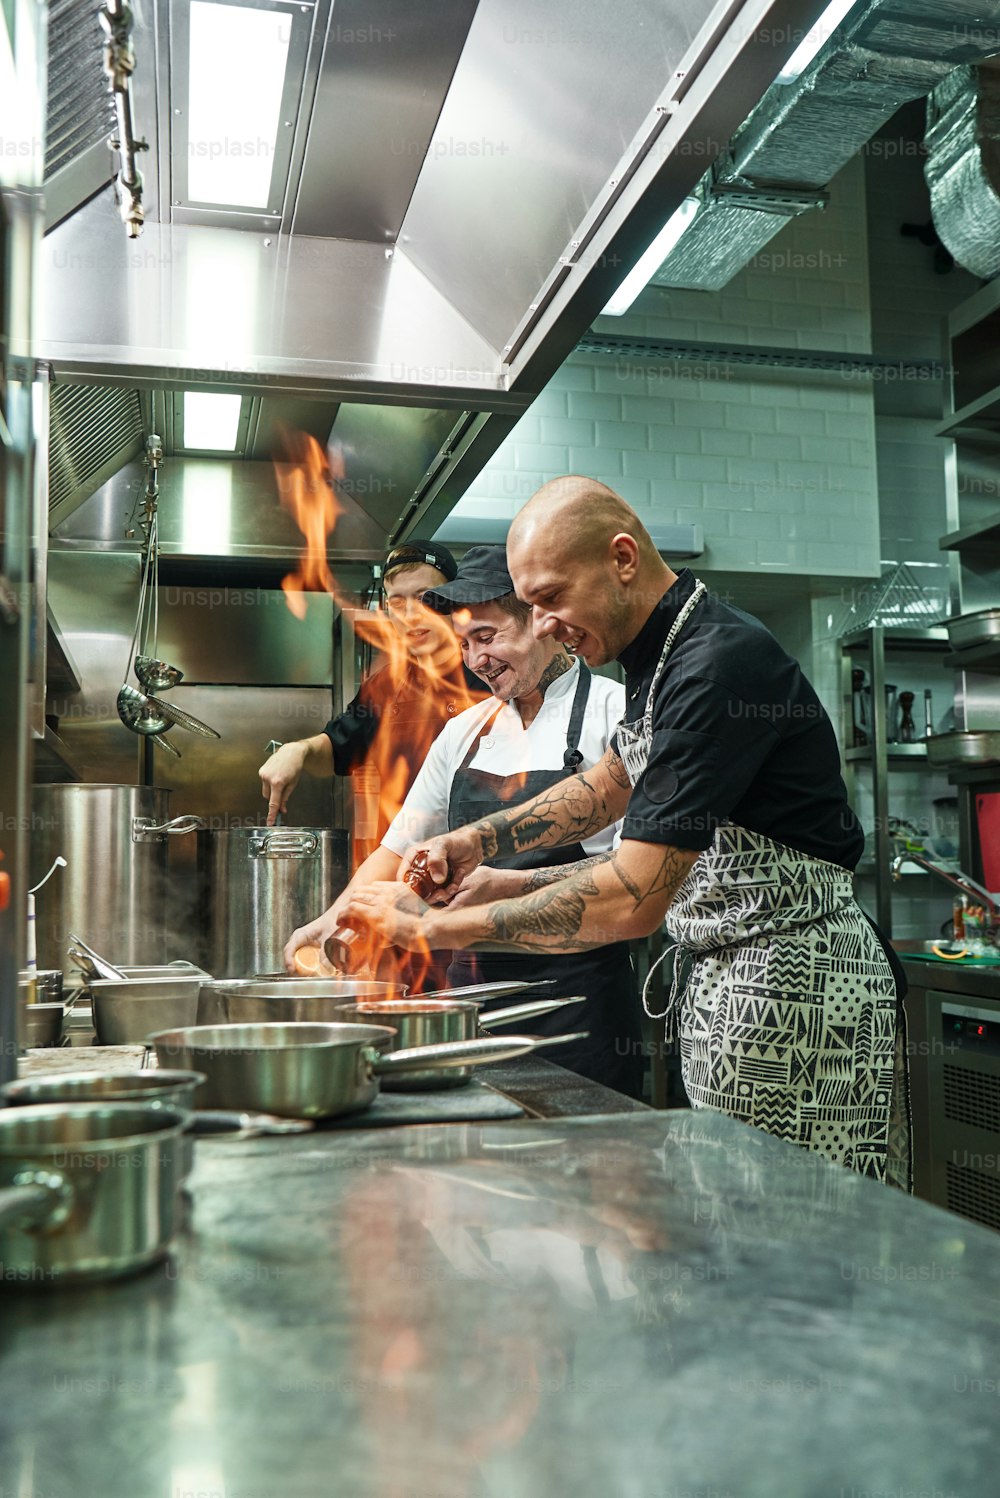 Muy caliente Alegre chef y dos de sus ayudantes preparando el plato en los fogones con fuego abierto en la cocina del restaurante. Flambe. Concepto de cocina